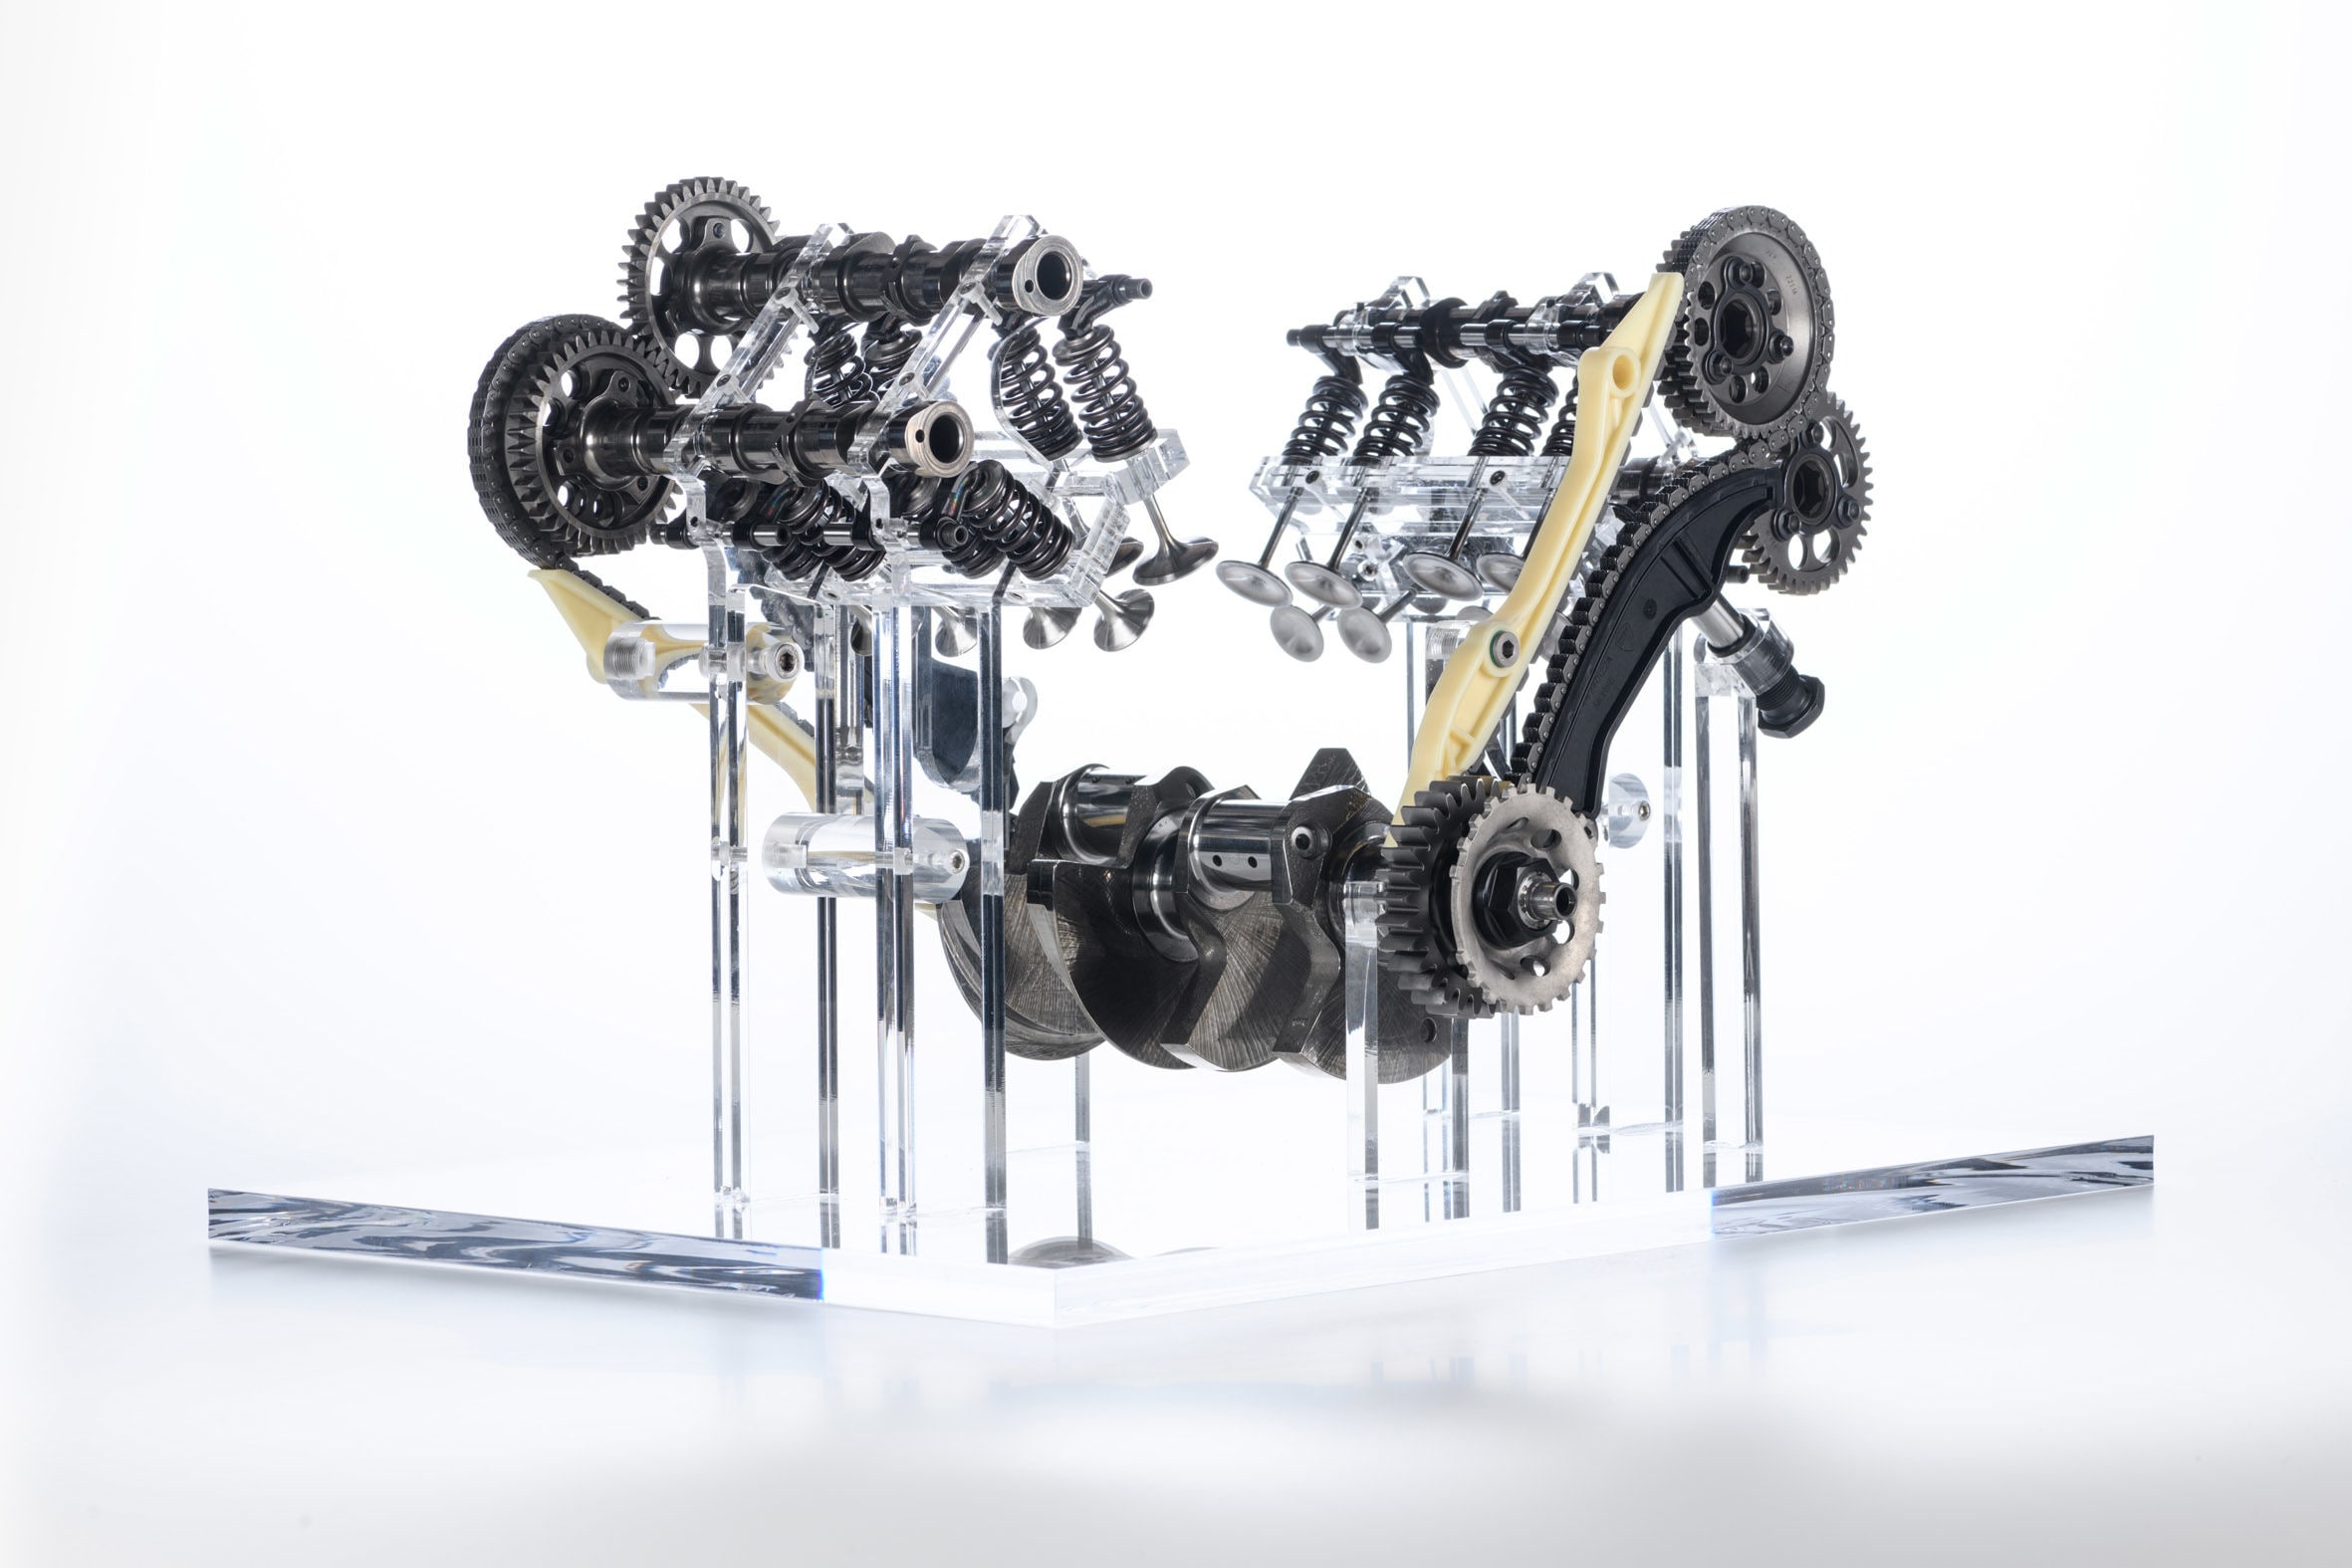 At 66.7 kg, the V4 Granturismo stands 1.2 kg lighter than the Testastretta twin-cylinder engine. 